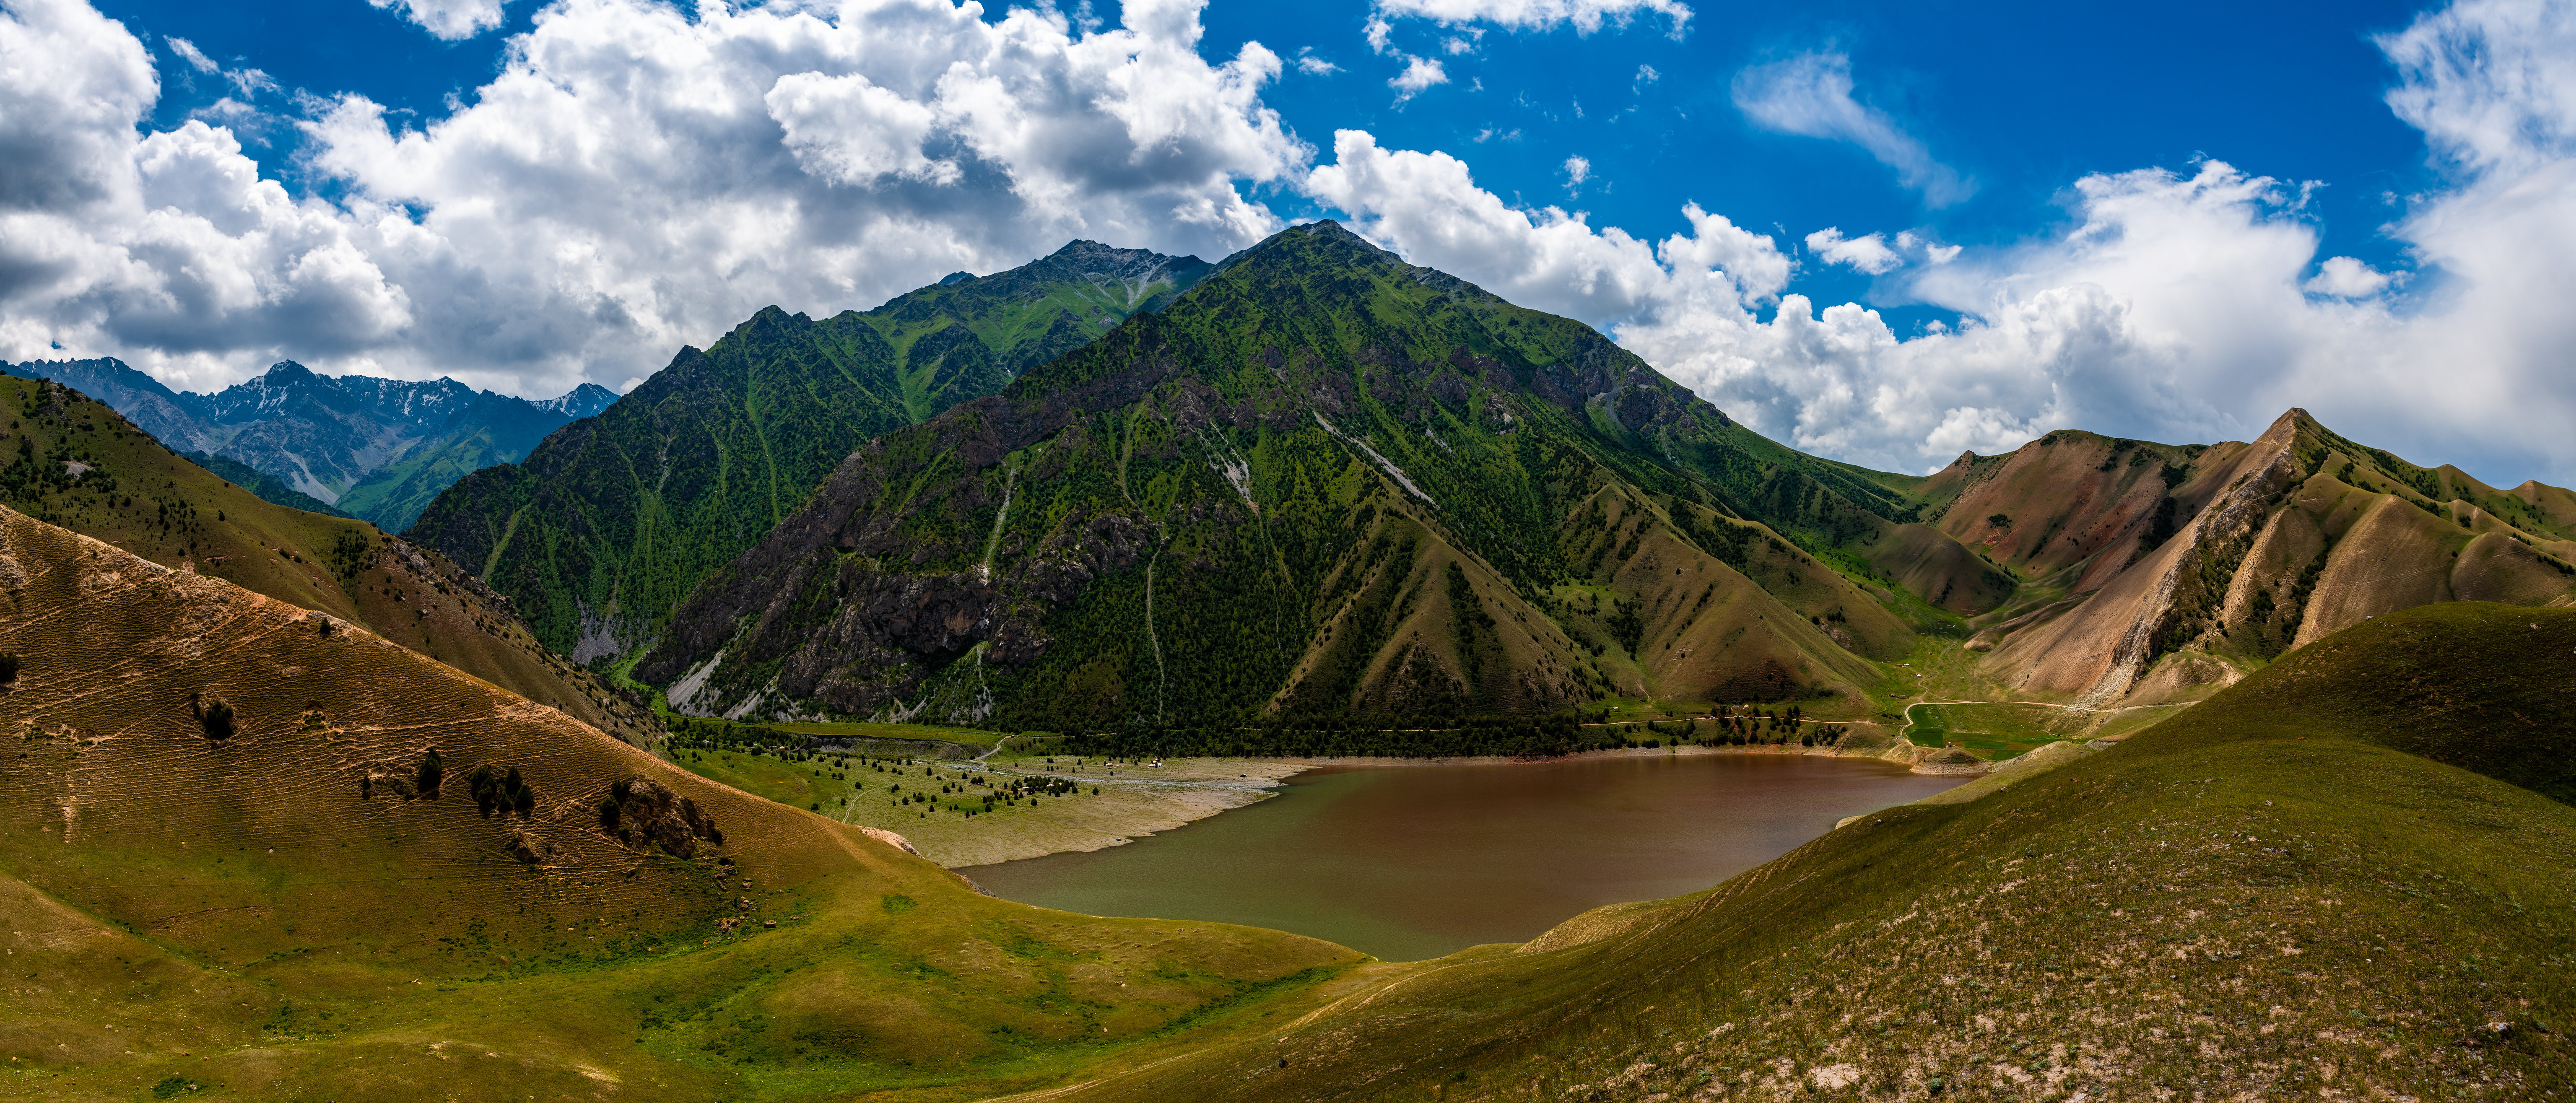 ，山，パノラマ，Kyrgyzstan，云，大自然，